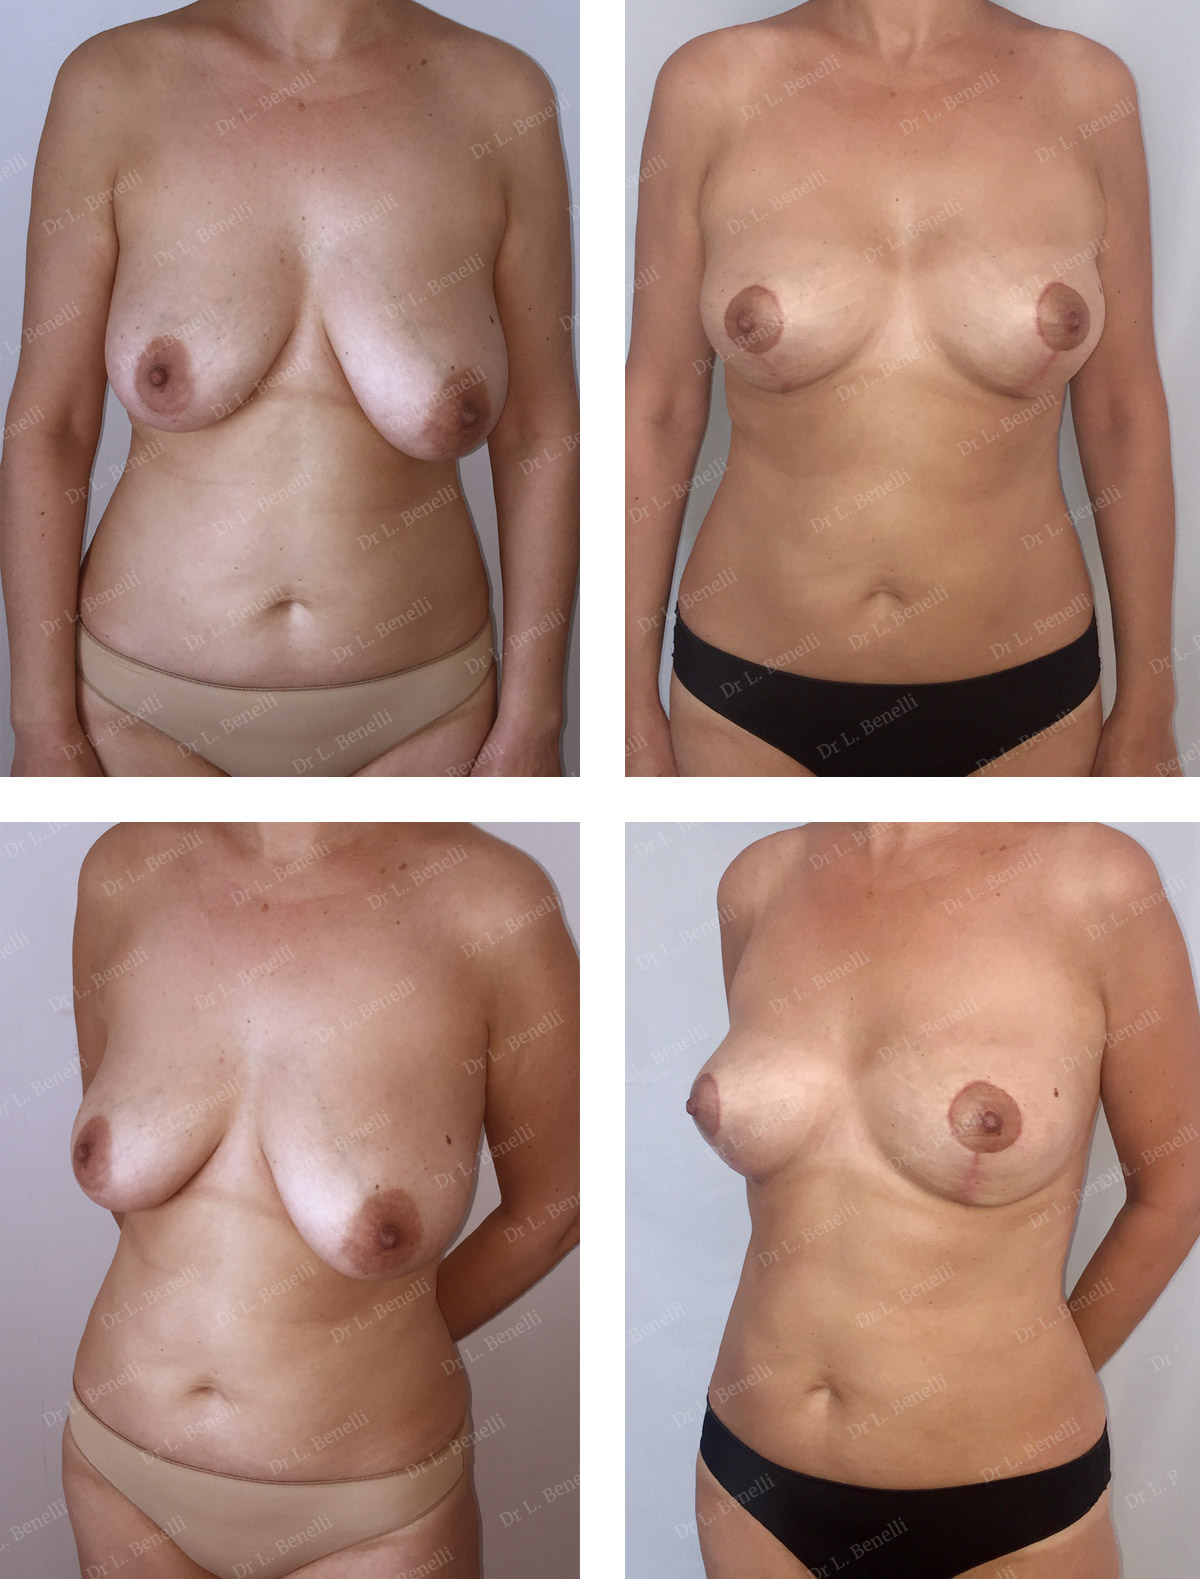 Réduction et symétrisation mammaire avant après réalisée par le Dr Benelli chirurgien plasticien